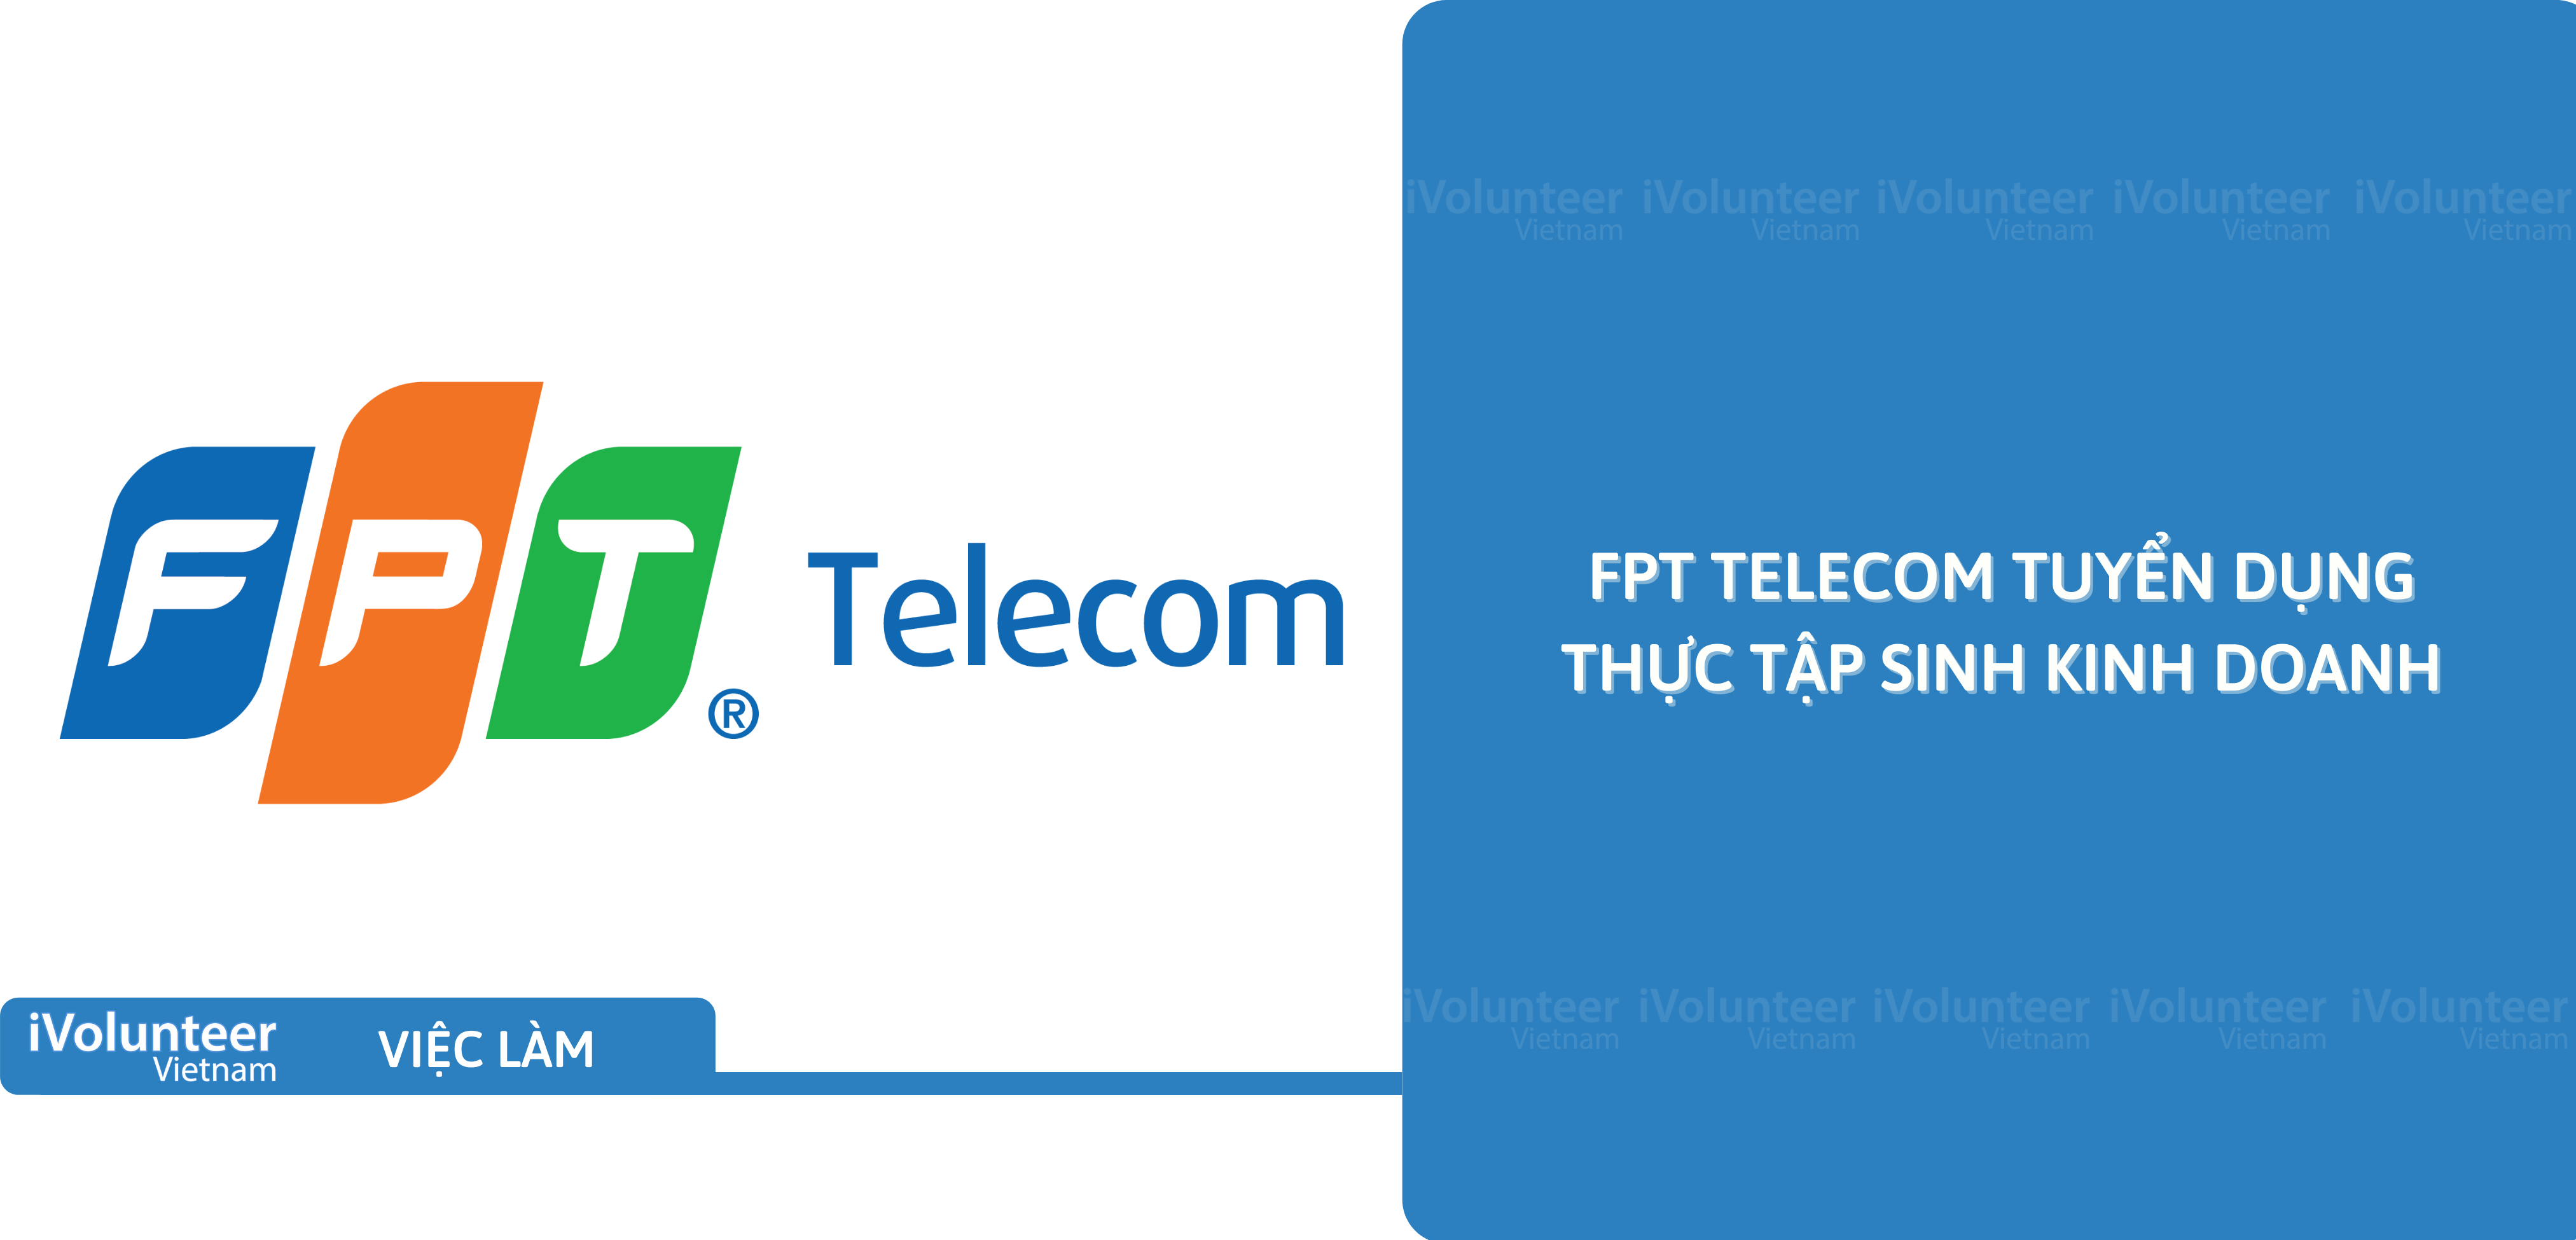 [Đà Nẵng] FPT Telecom Tuyển Dụng Thực Tập Sinh Kinh Doanh